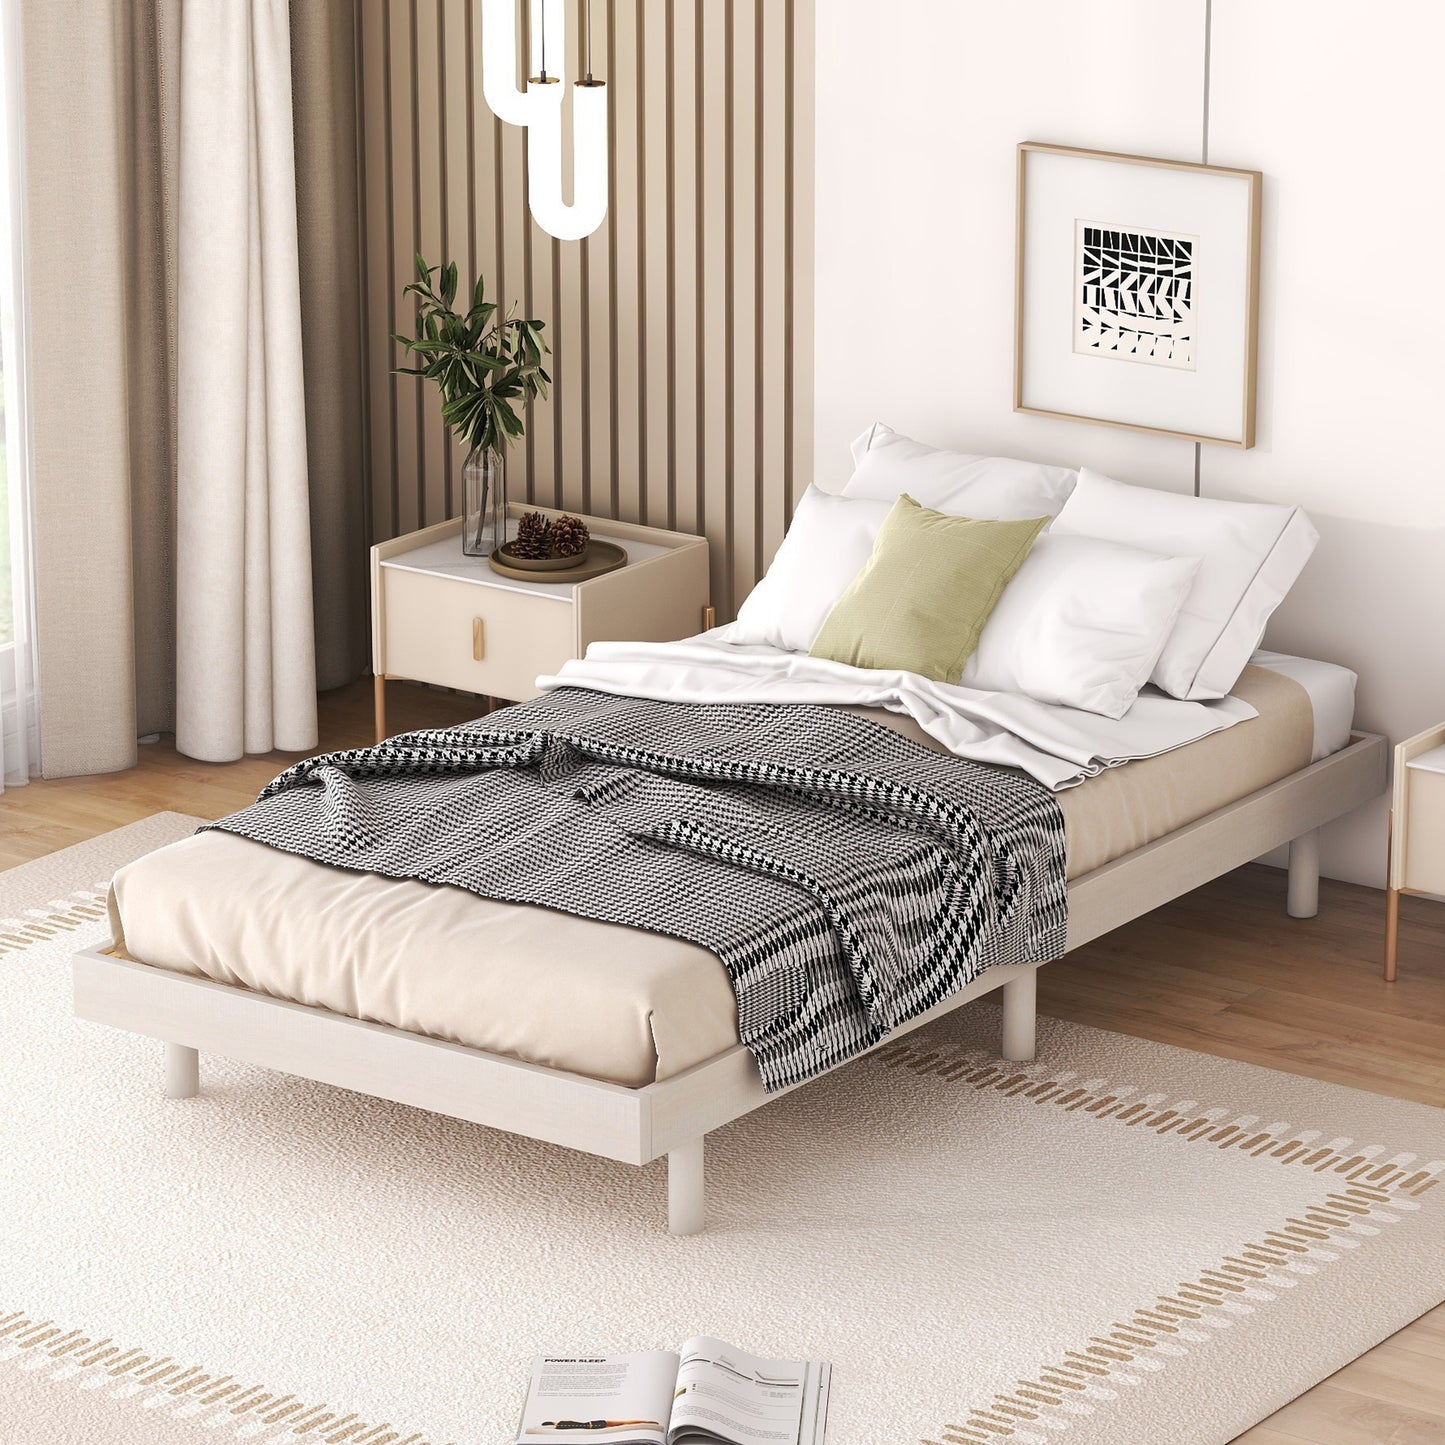 Modern Design Twin Size Floating Platform Bed Frame for White Washed Color